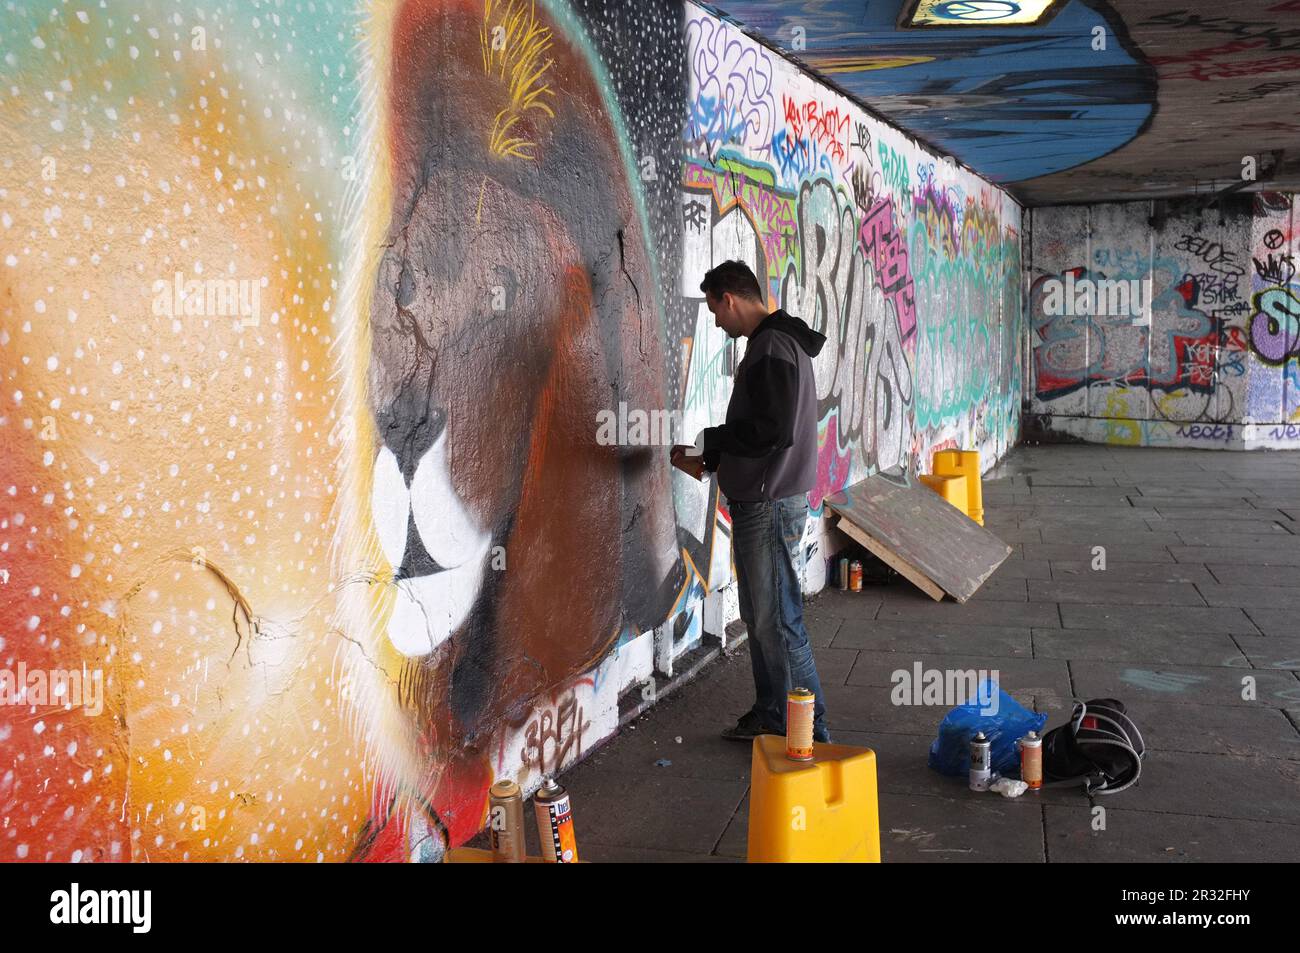 Londra, Inghilterra - 26 maggio 2013: Un giovane artista di graffiti spray sta dipingendo su una parete di cemento la testa di un leone; questo graffiti e altri sono sulla R Foto Stock